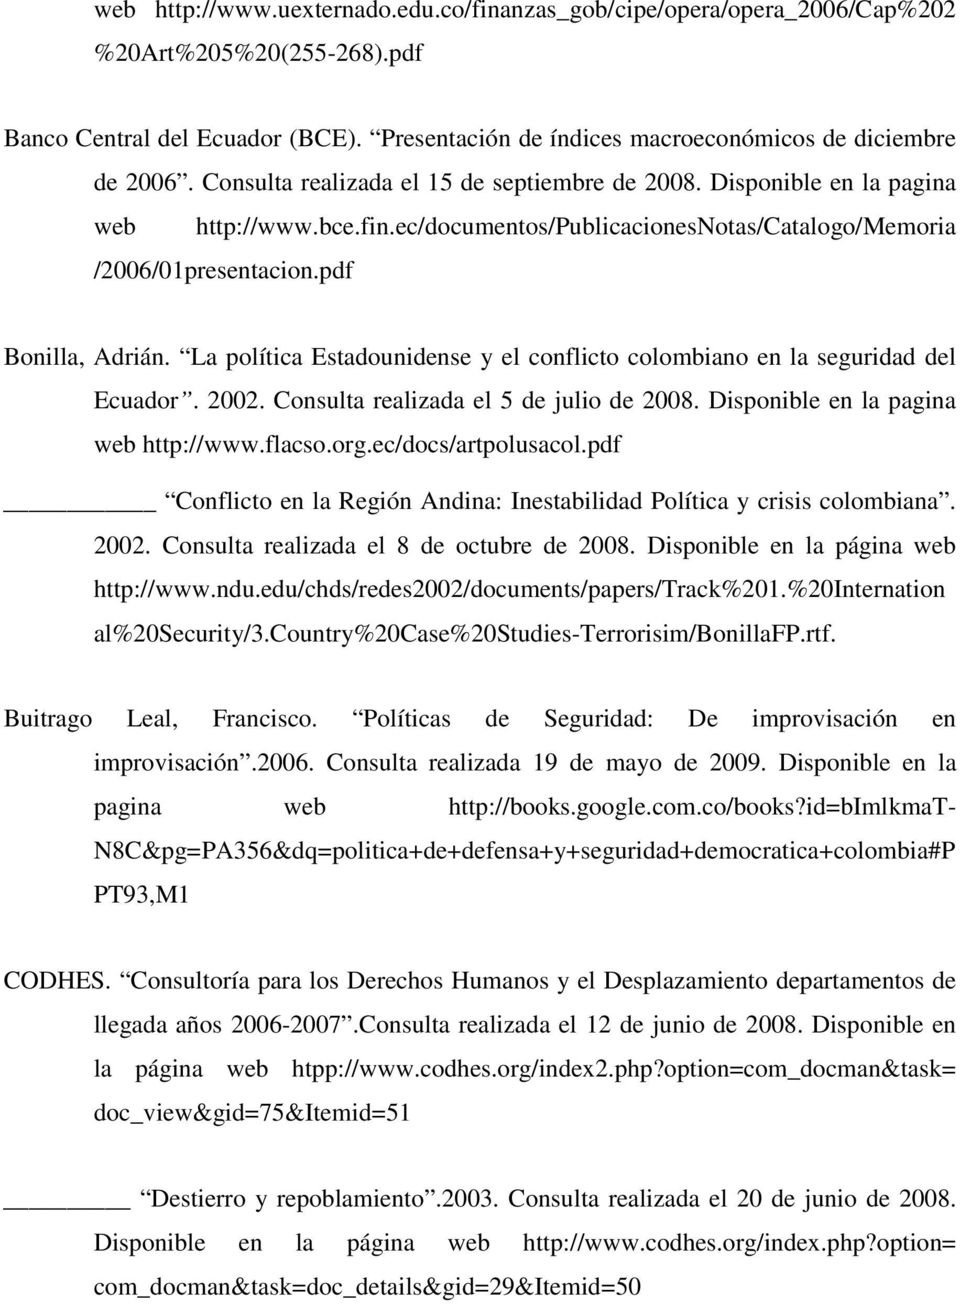 La política Estadounidense y el conflicto colombiano en la seguridad del Ecuador. 2002. Consulta realizada el 5 de julio de 2008. Disponible en la pagina web http://www.flacso.org.